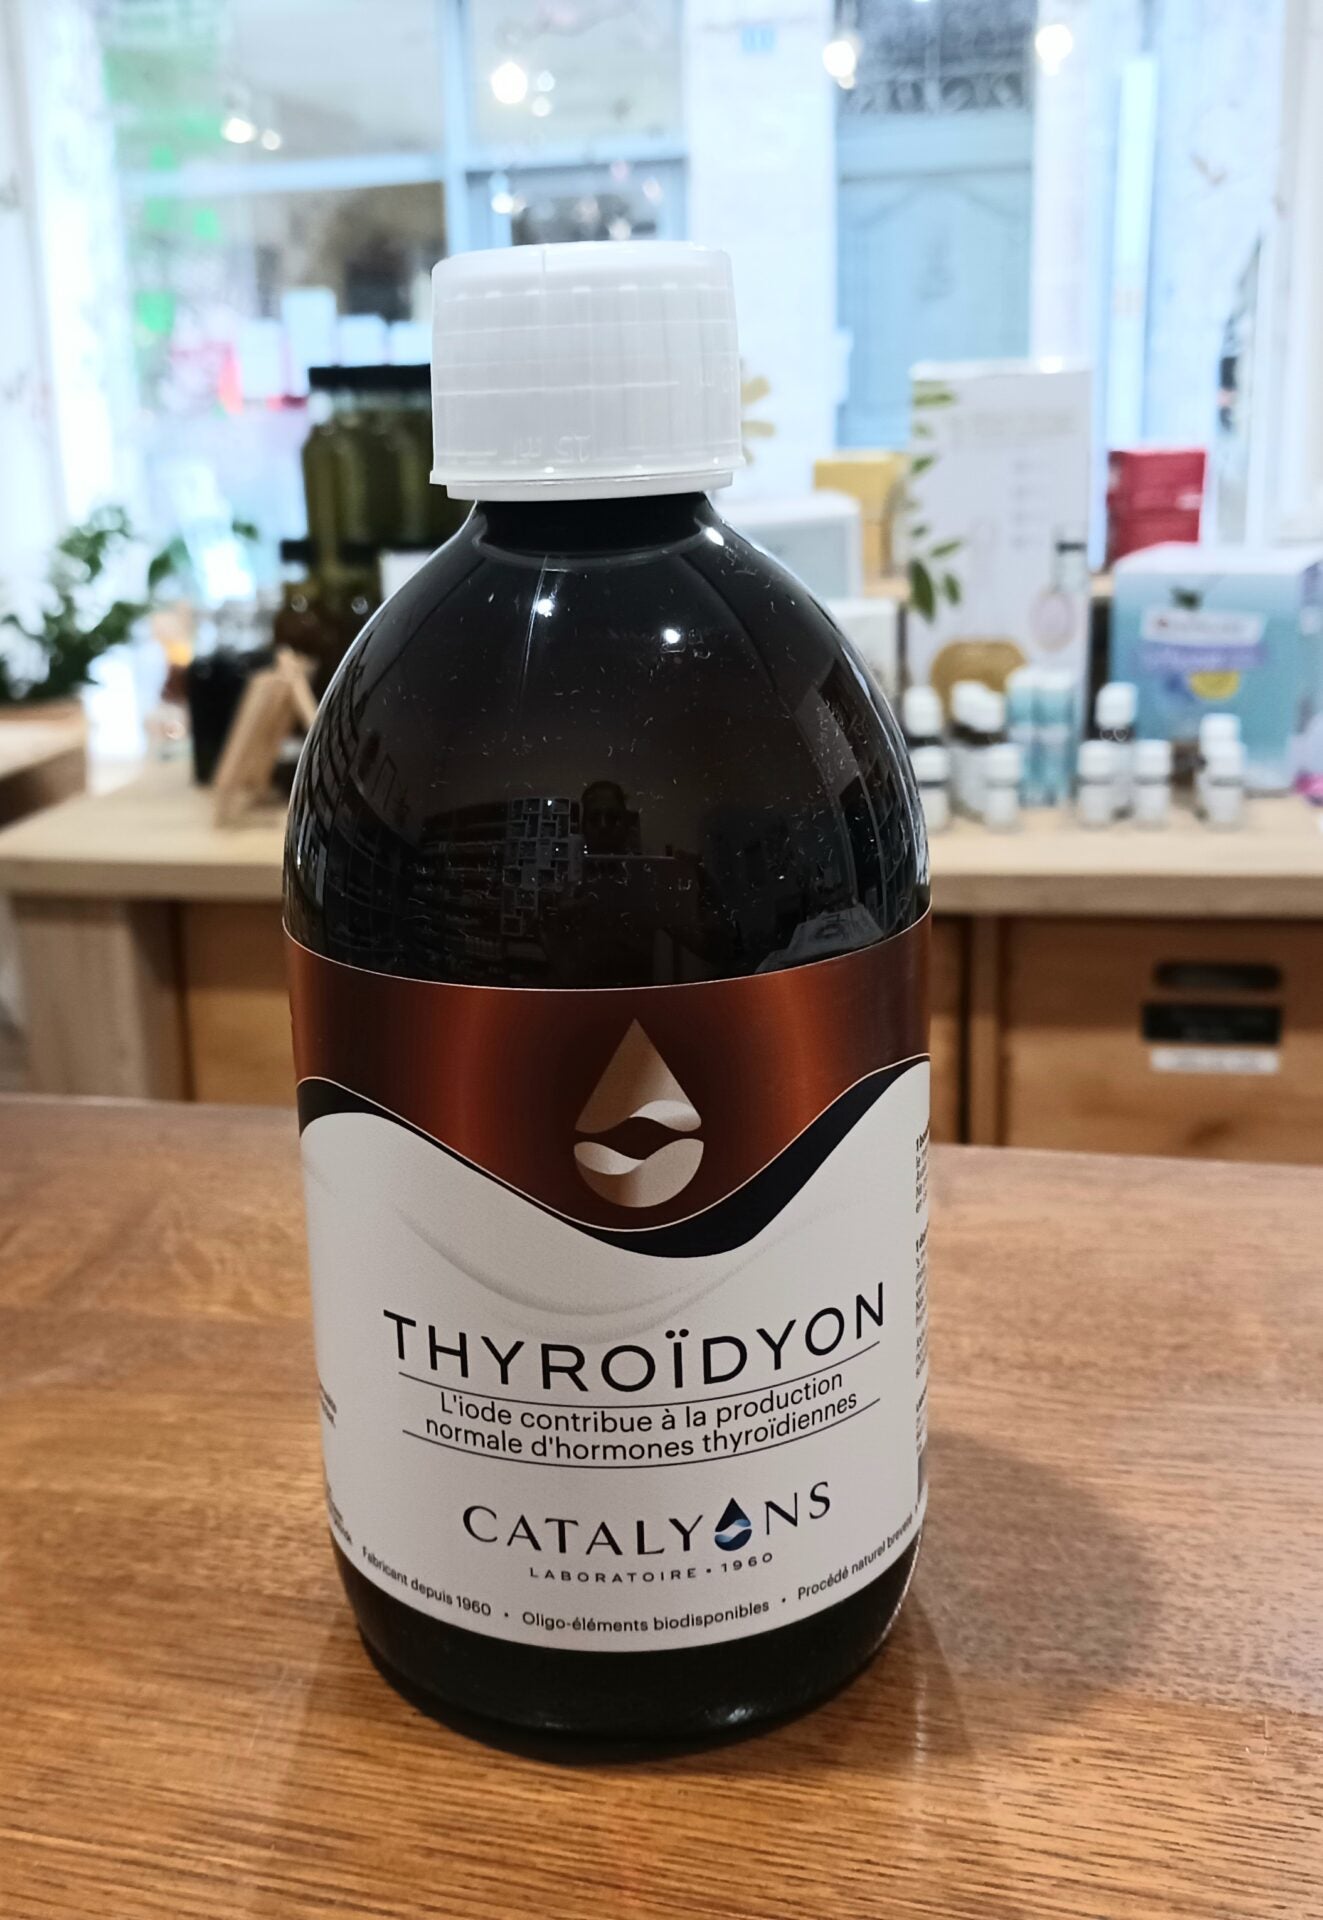 Thyroidyon